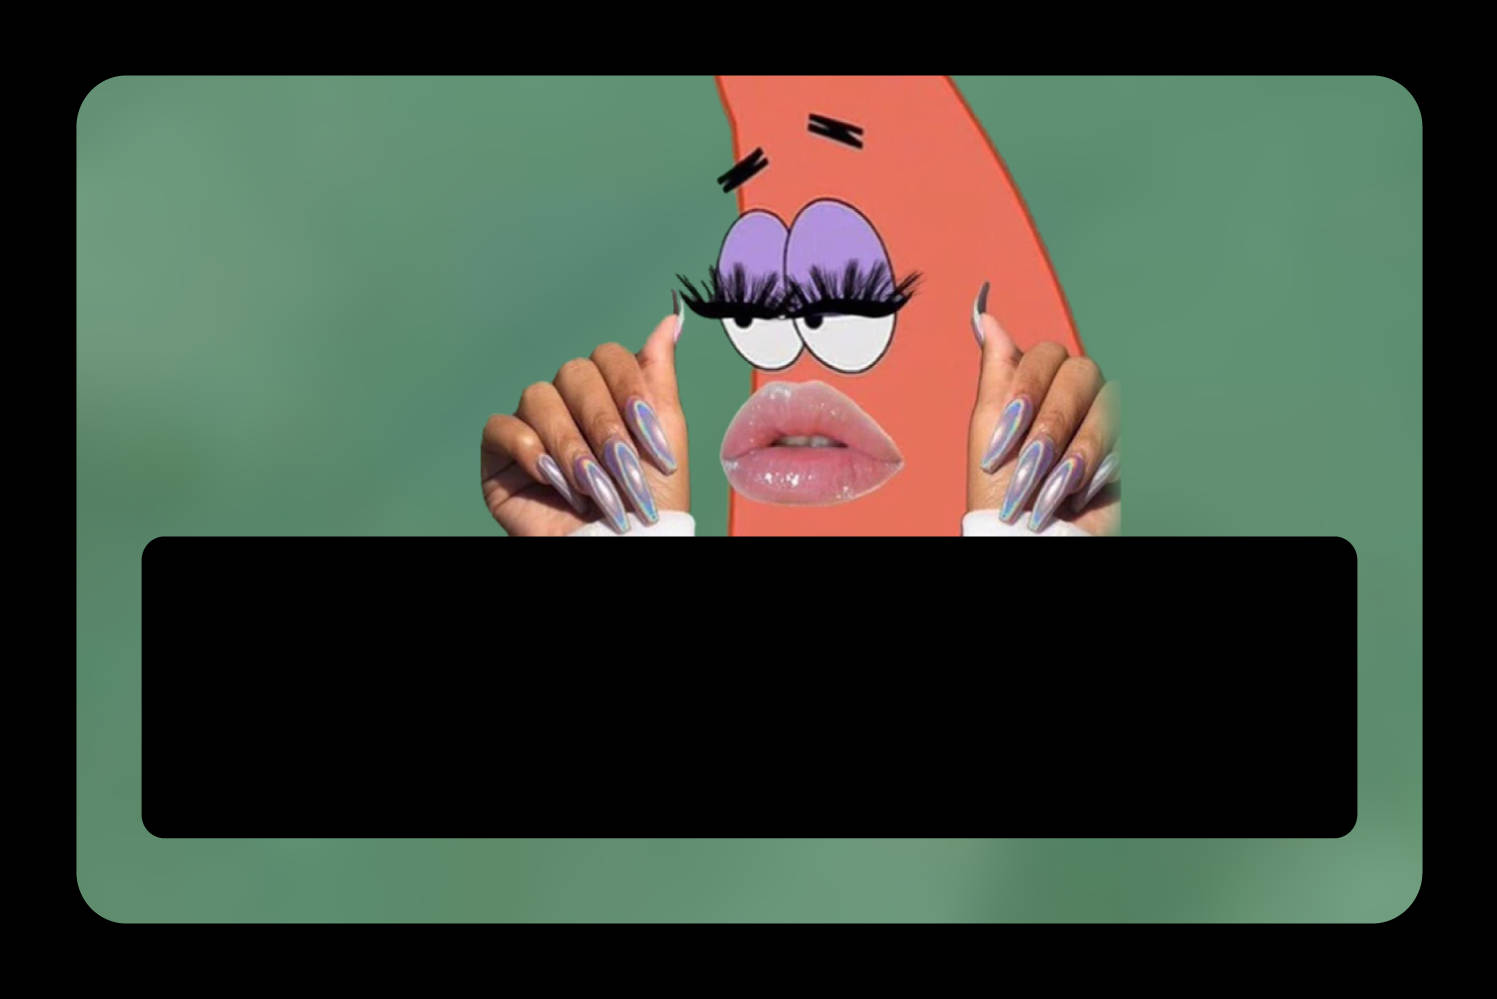 En tegnefilm Spongebob Squarepants karakter med en pink ansigt. Wallpaper